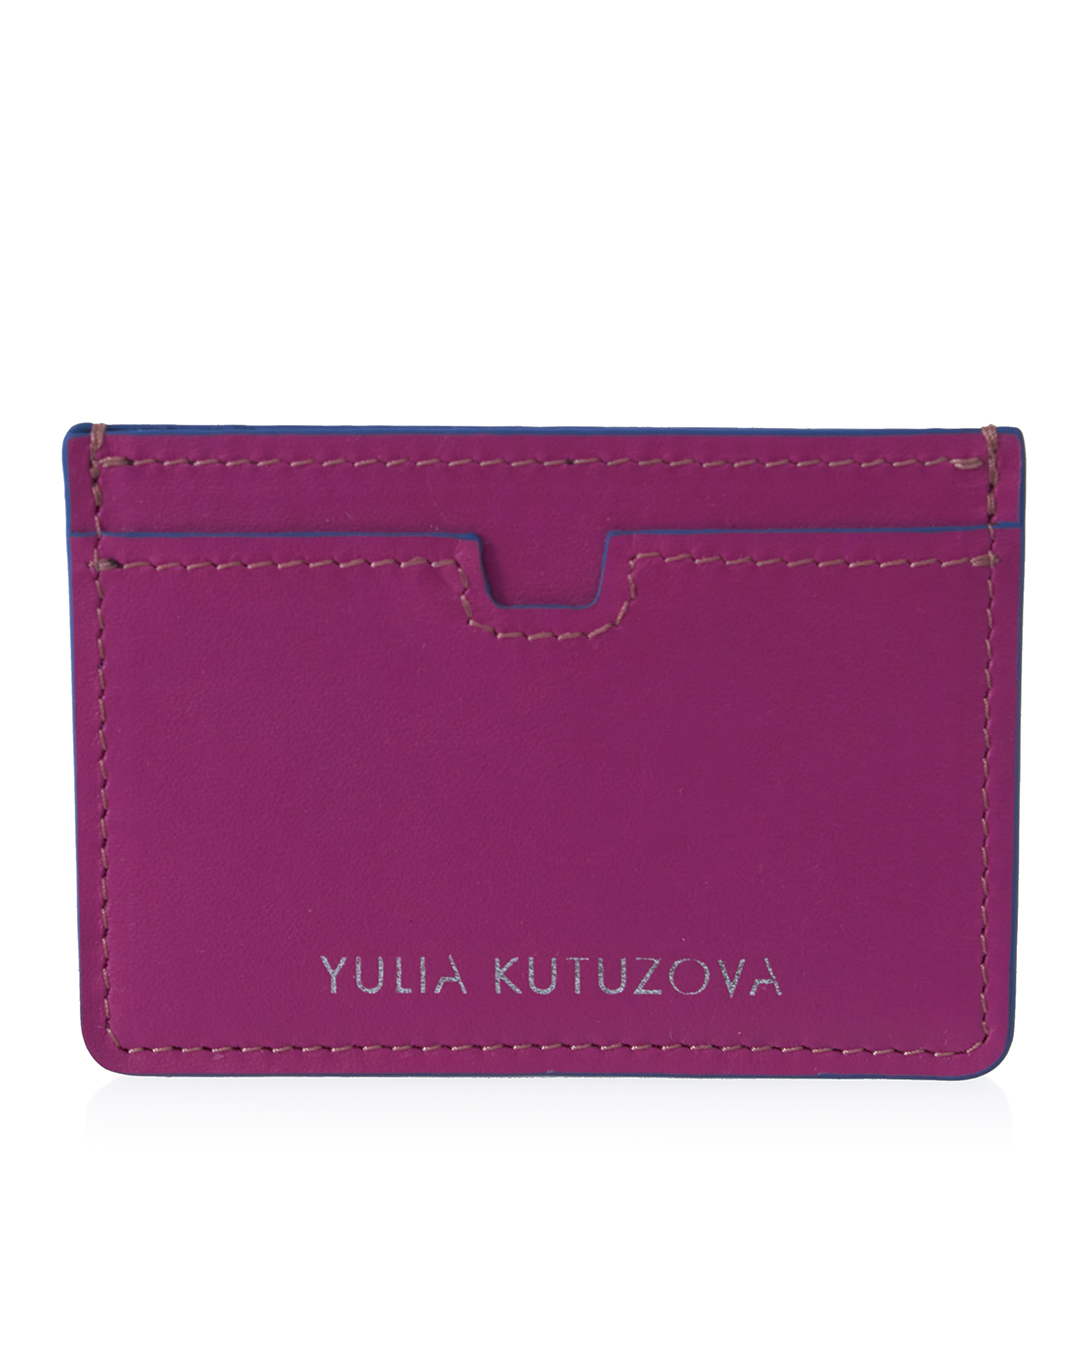 YULIA KUTUZOVA  артикул  марки YULIA KUTUZOVA купить за 4100 руб.